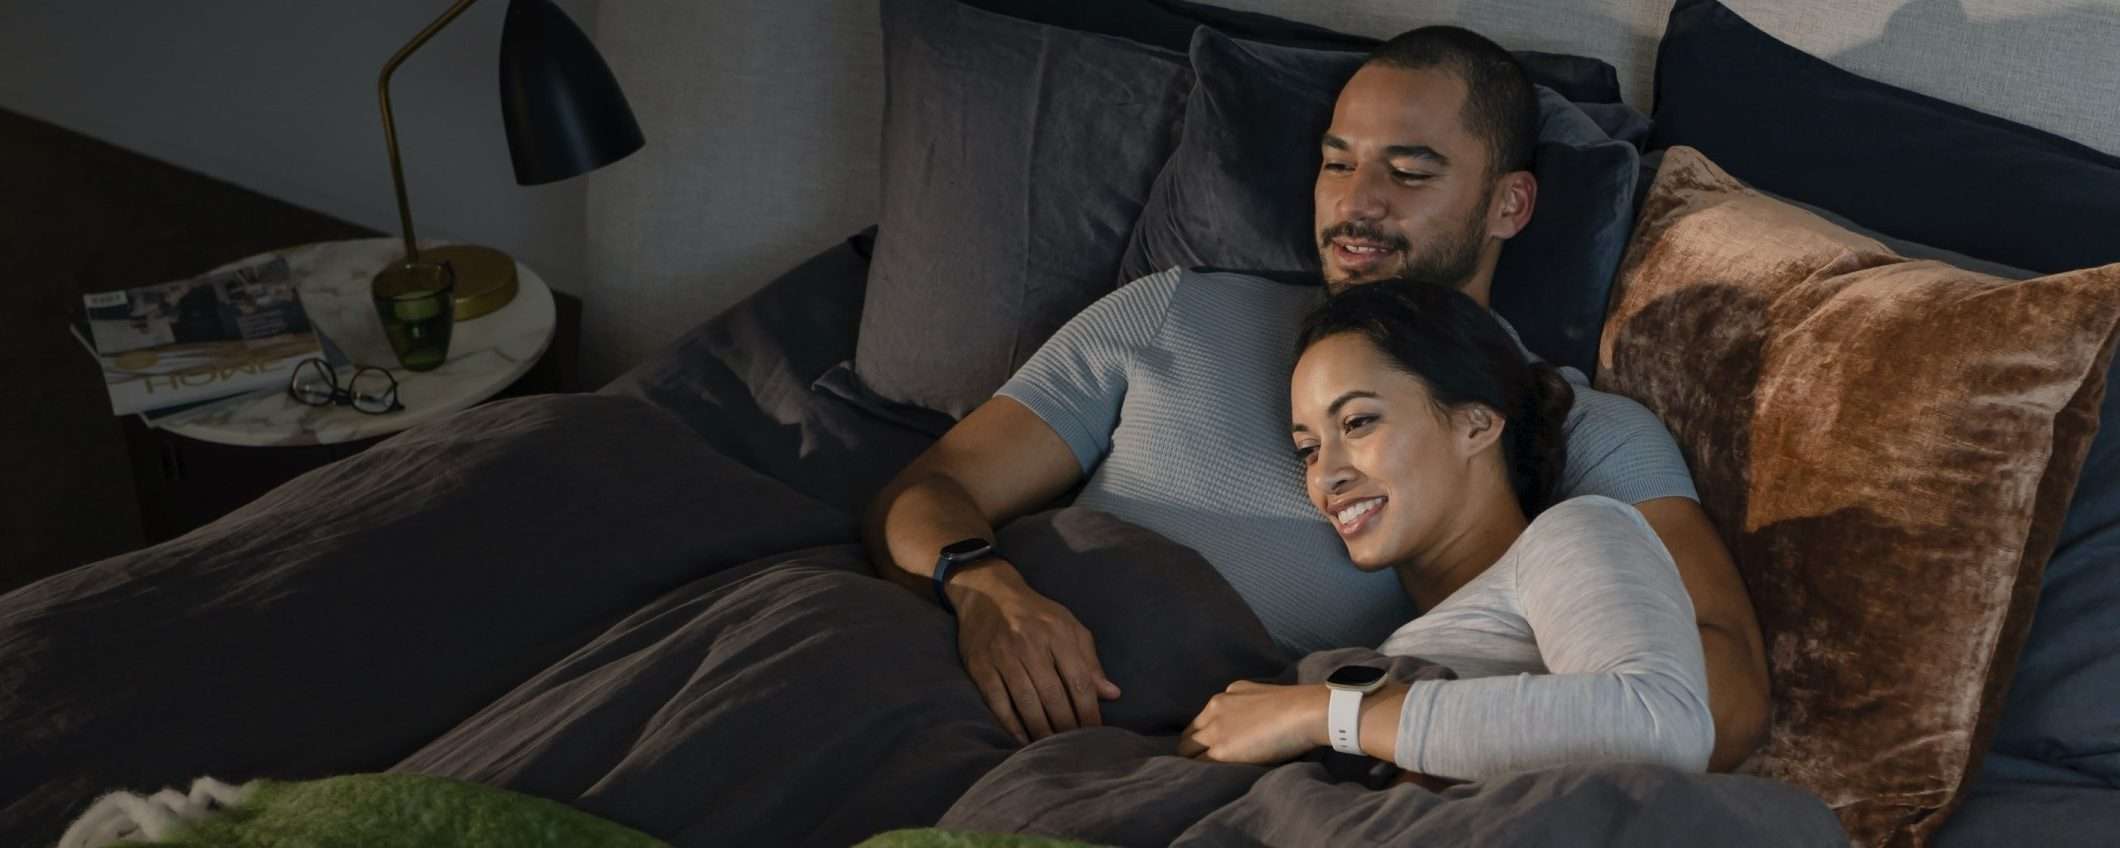 Fitbit migliora il tracciamento del sonno (Premium)